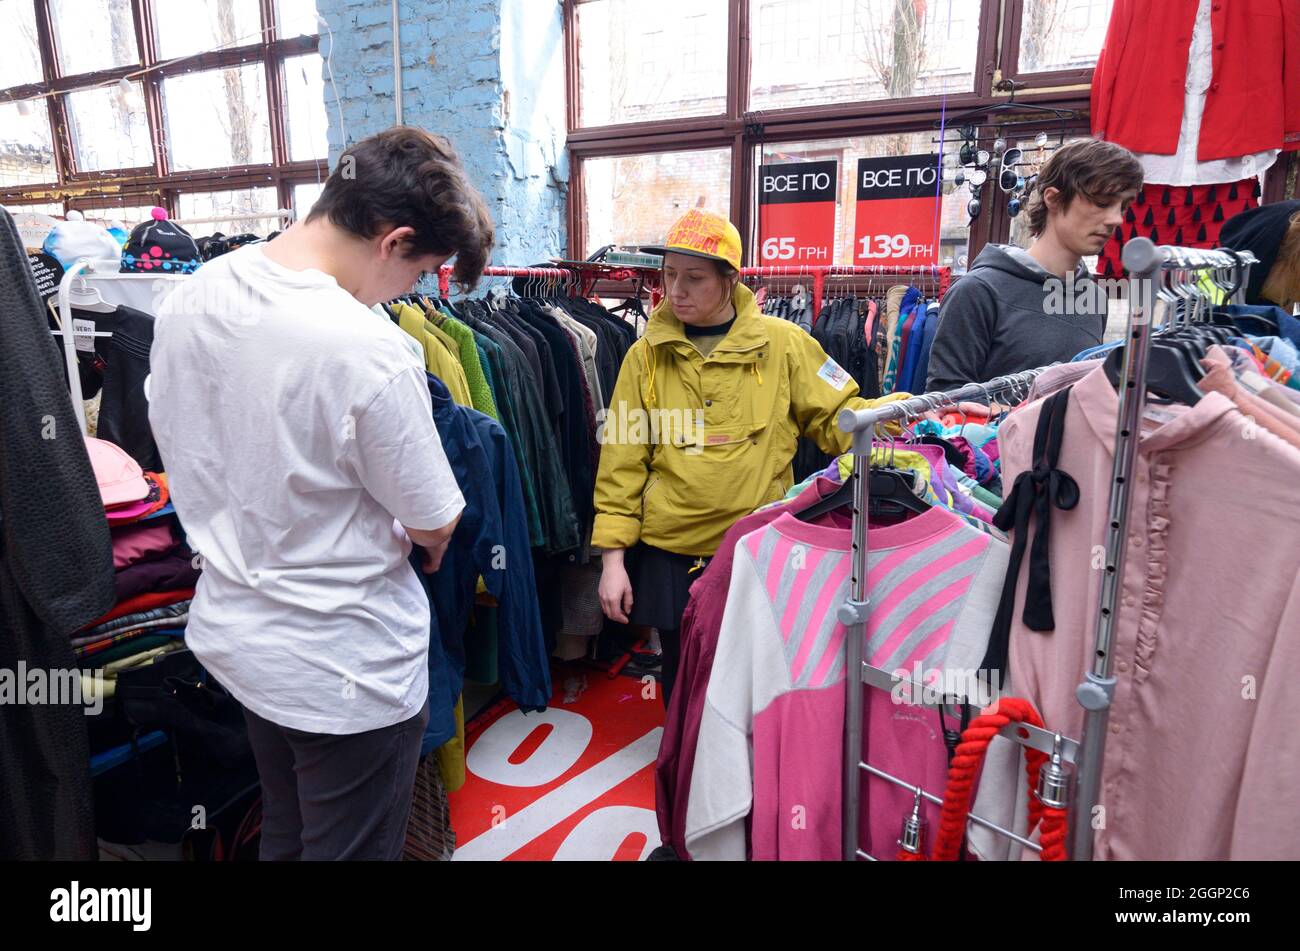 Rastro. Hombre joven escogiendo ropa de segunda mano en una tienda, mujer vendedora ayudándolo. de septiembre de 2019. Kiev, Ucrania Fotografía de stock - Alamy